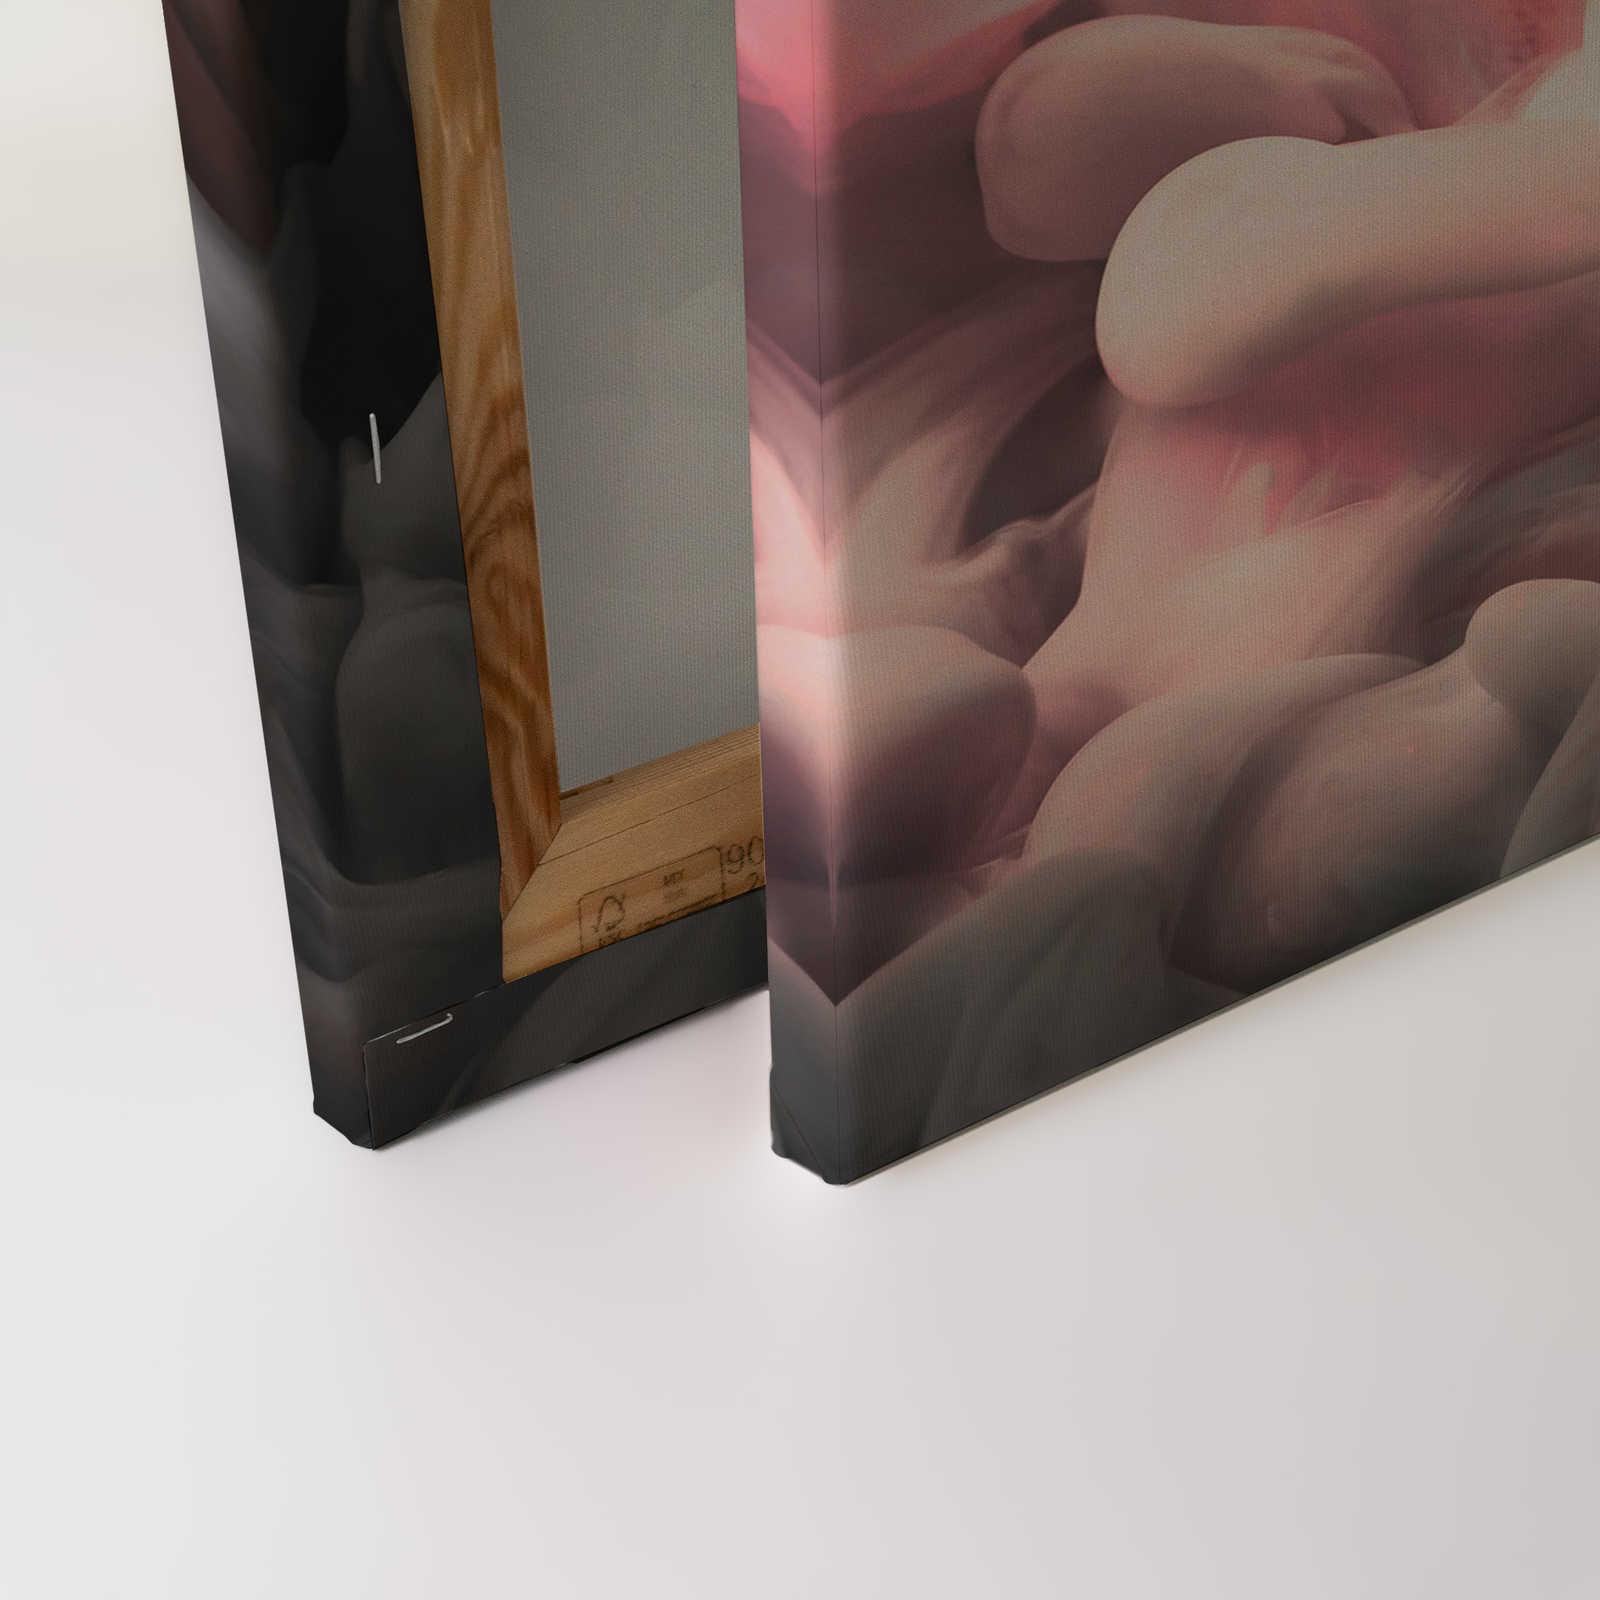             Farbiger Rauch Leinwand | Rosa, Grau, Weiß – 0,90 m x 0,60 m
        